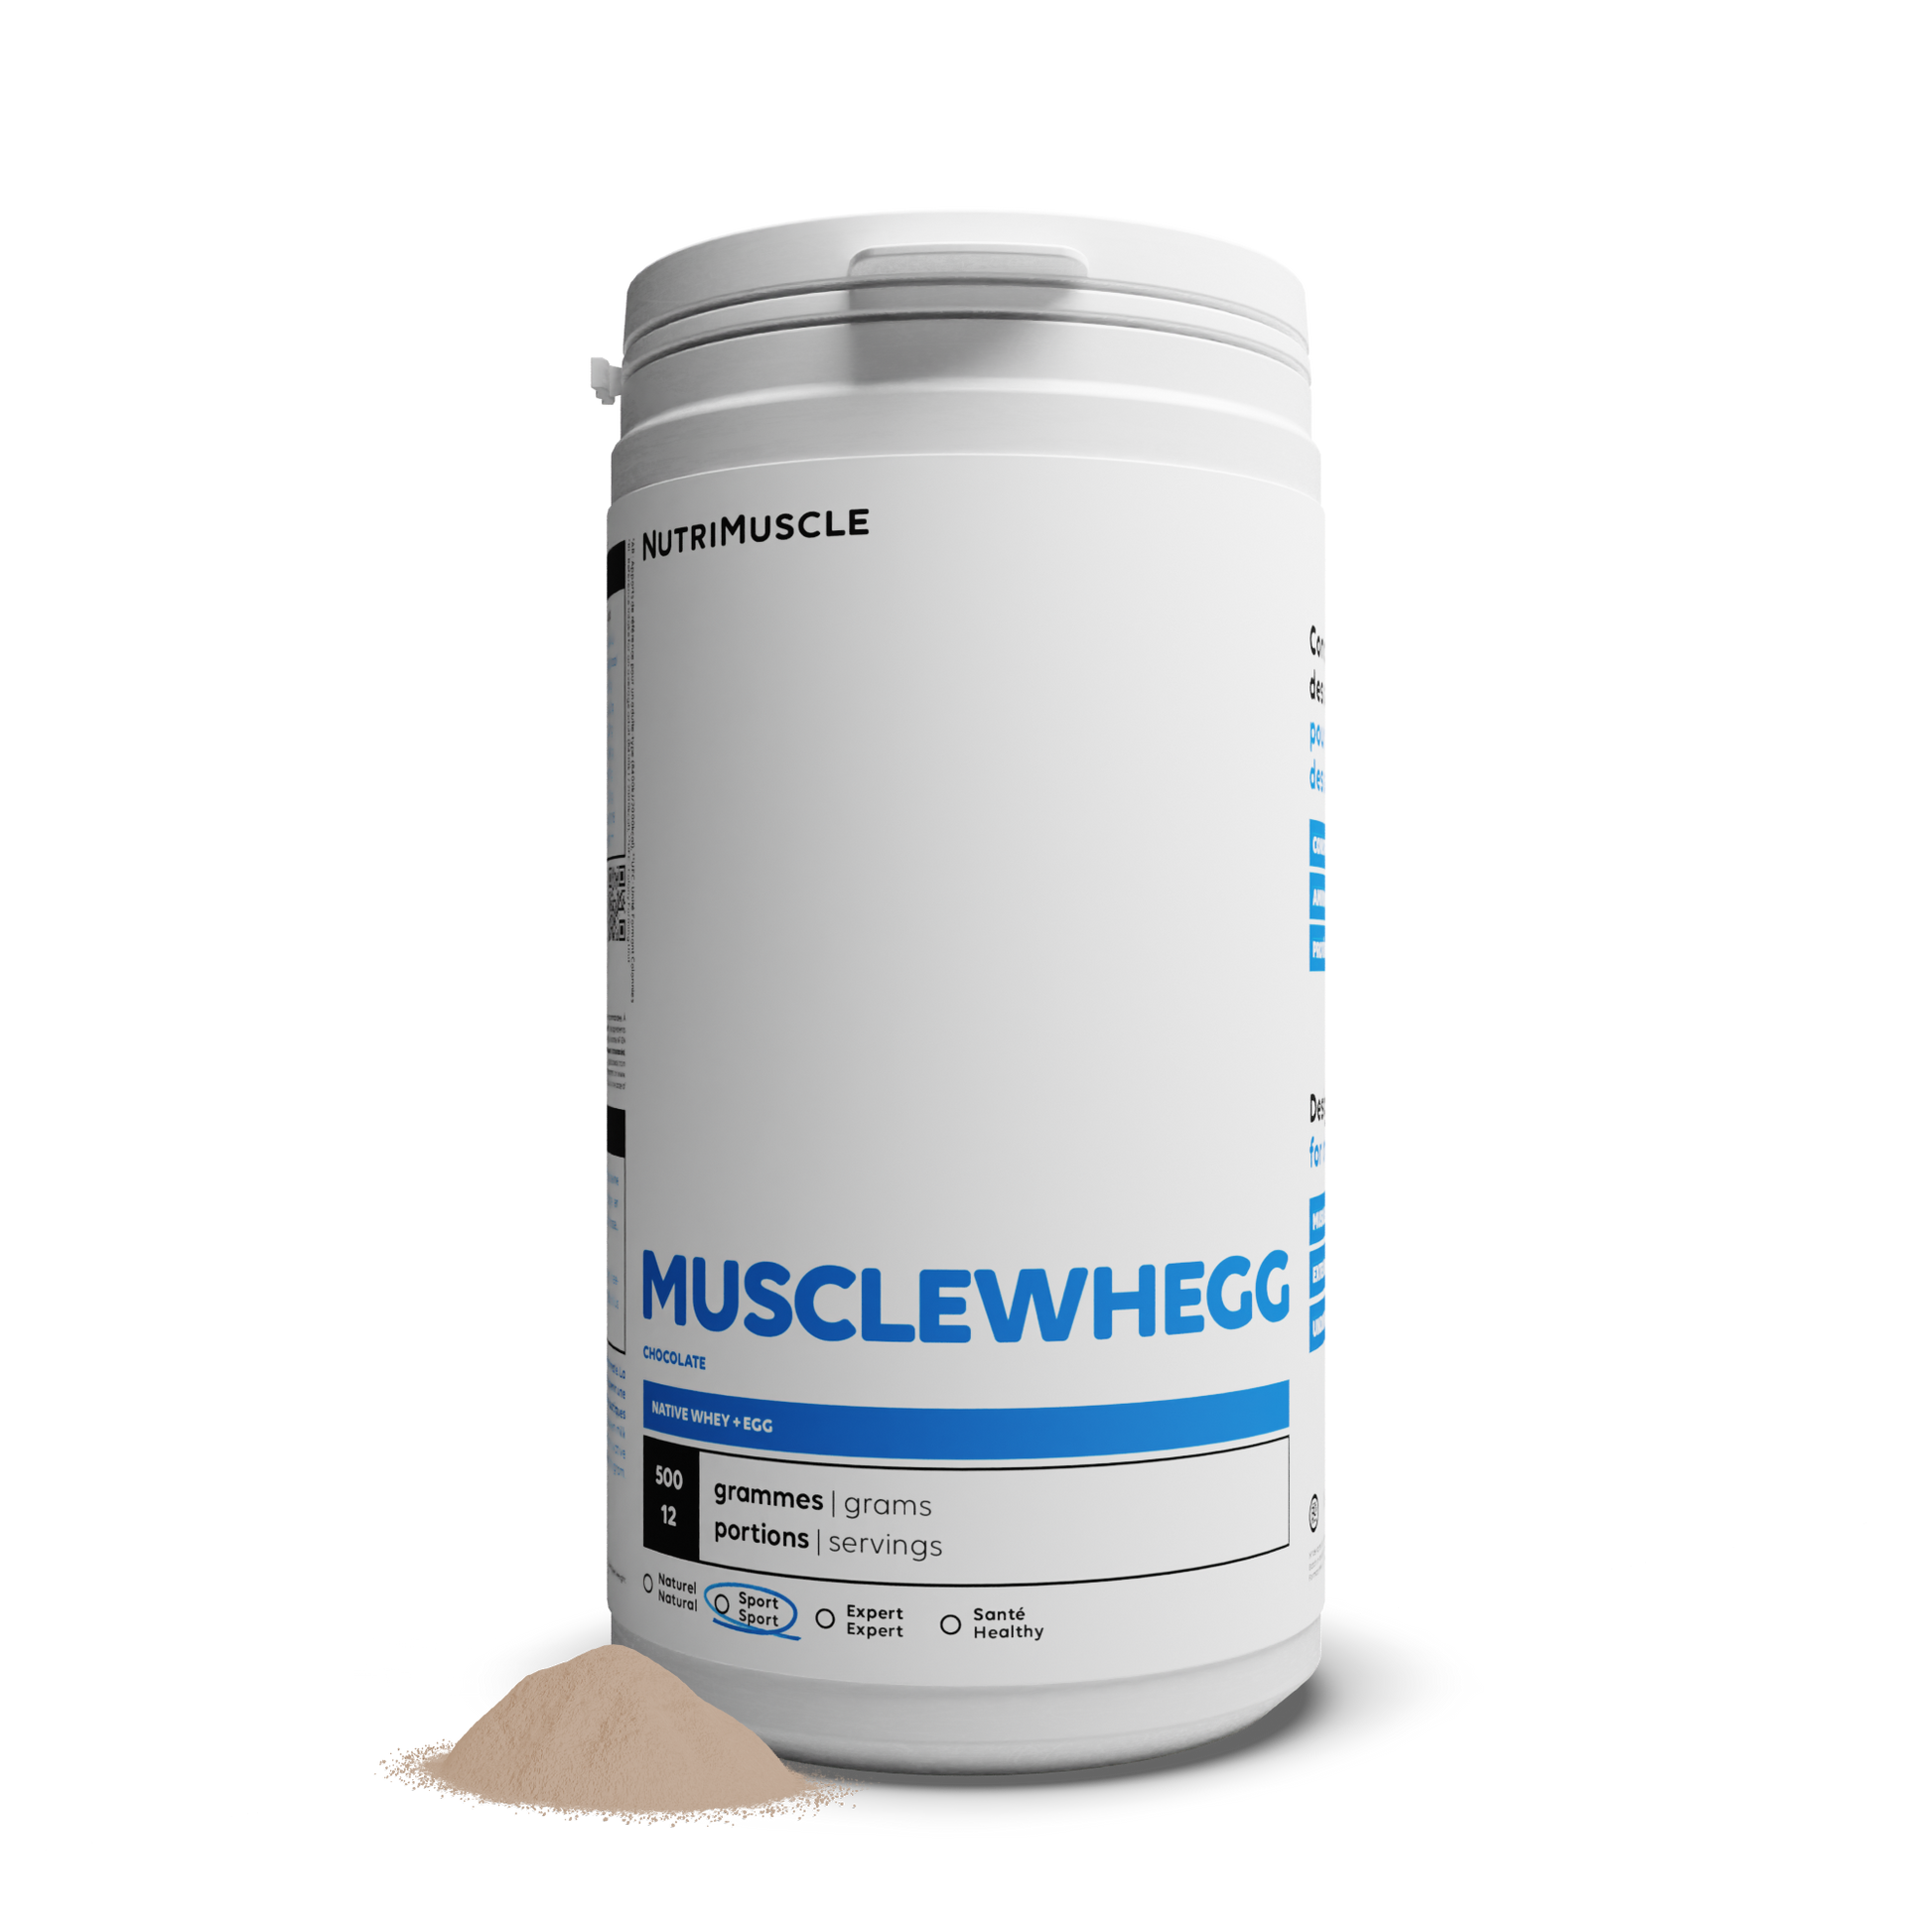 Musclewegg: mezcla de proteínas